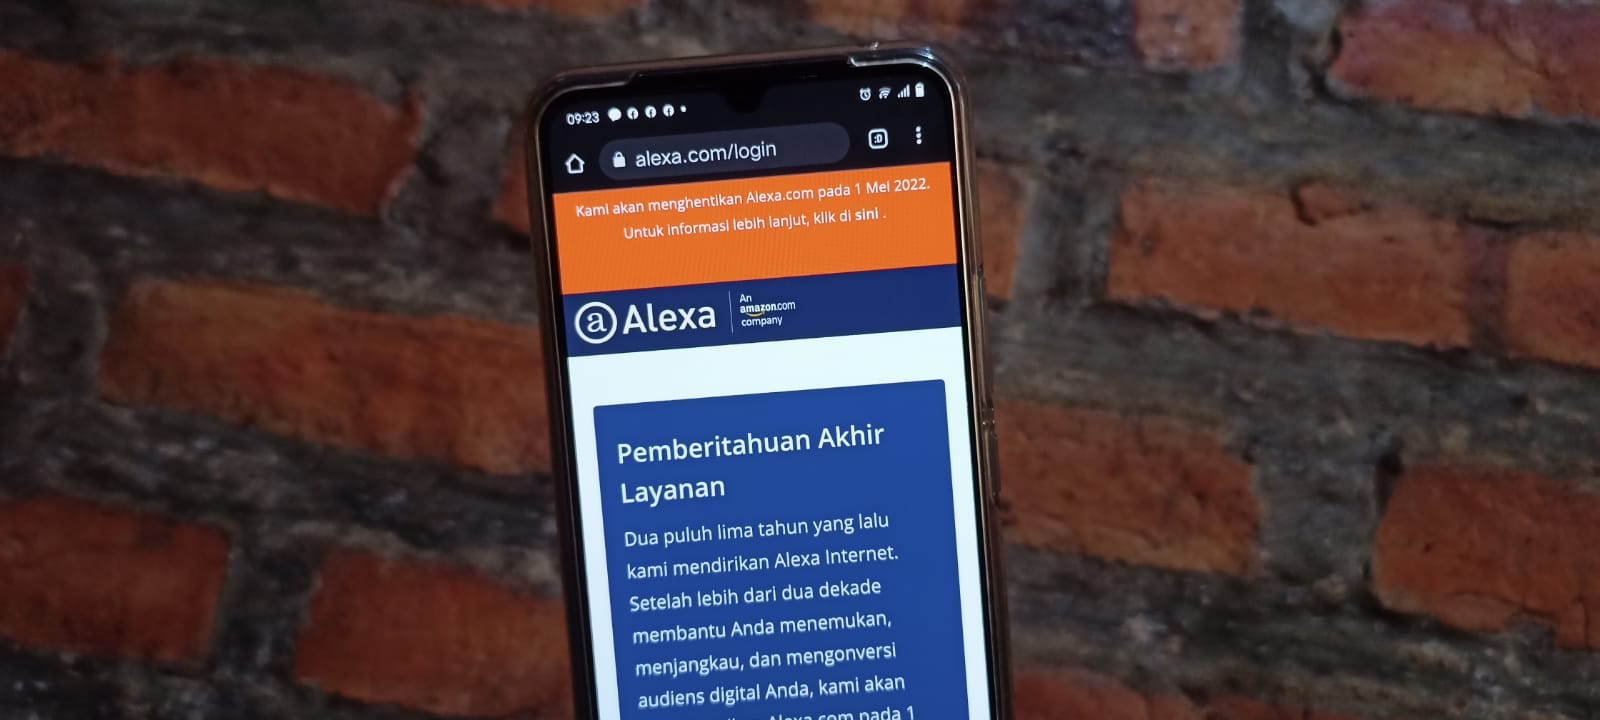 Alexa.com Ditutup Mei 2022, Bagaimana Nasib Penggunanya?